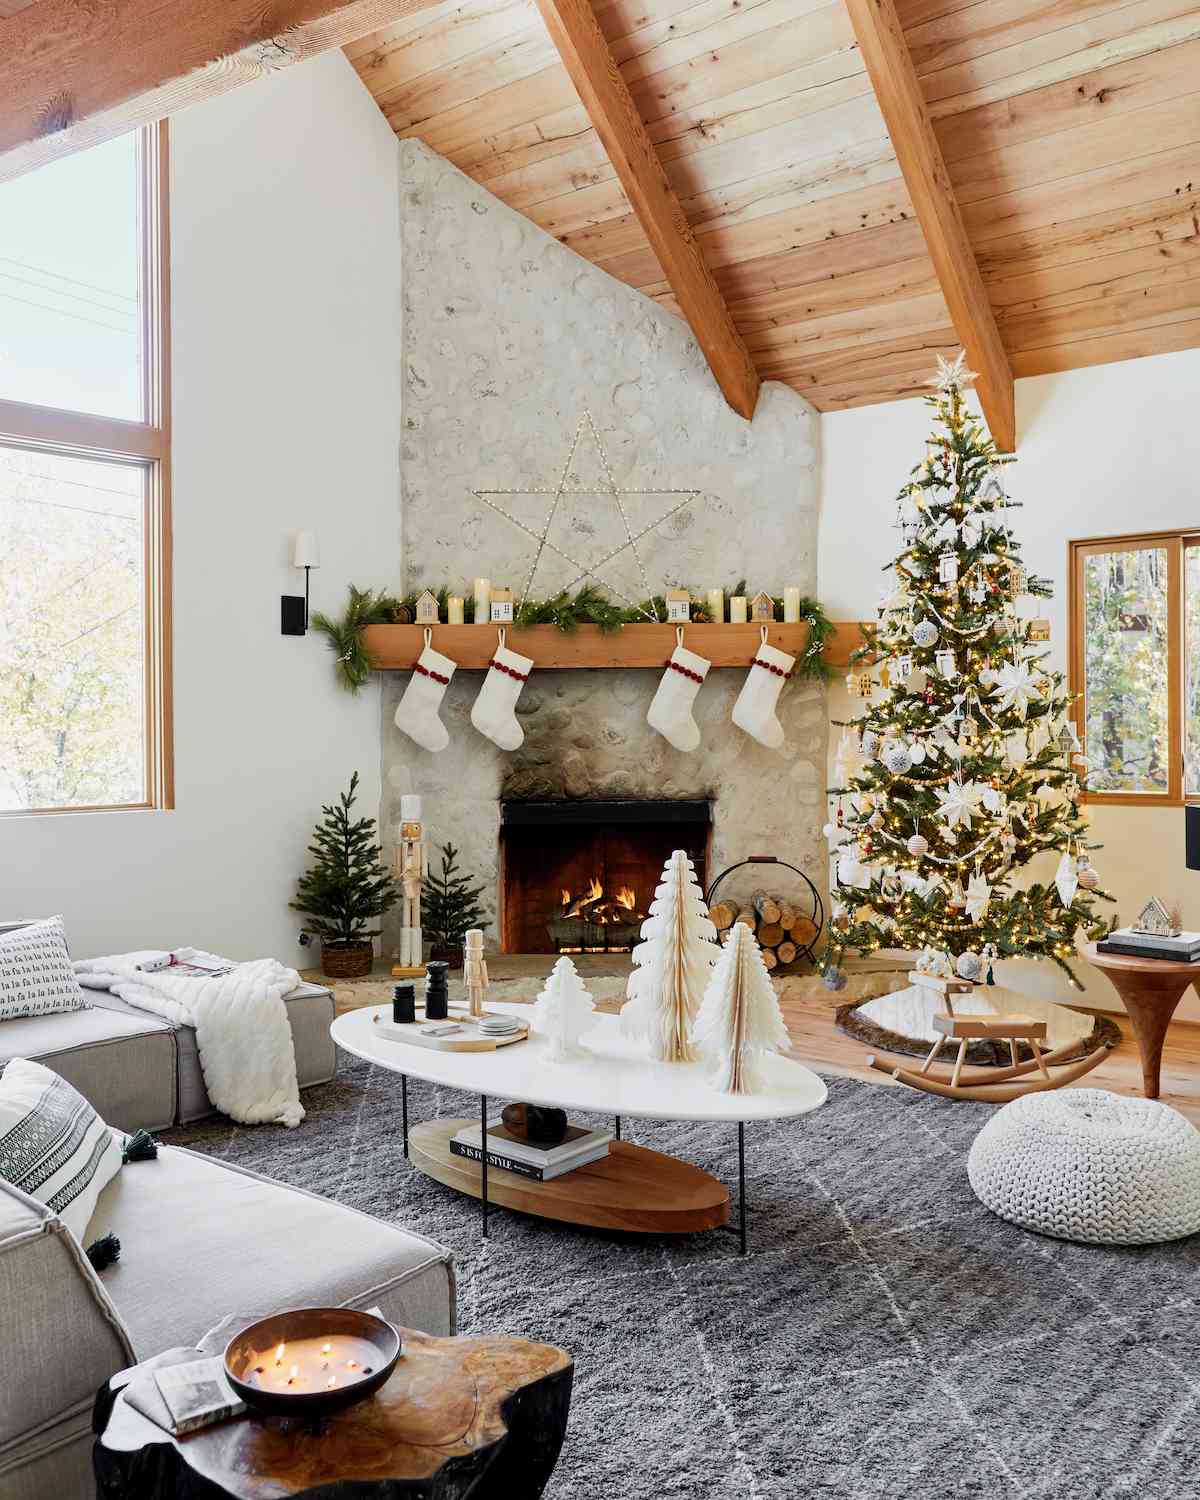 ideas decoración navidad blanca